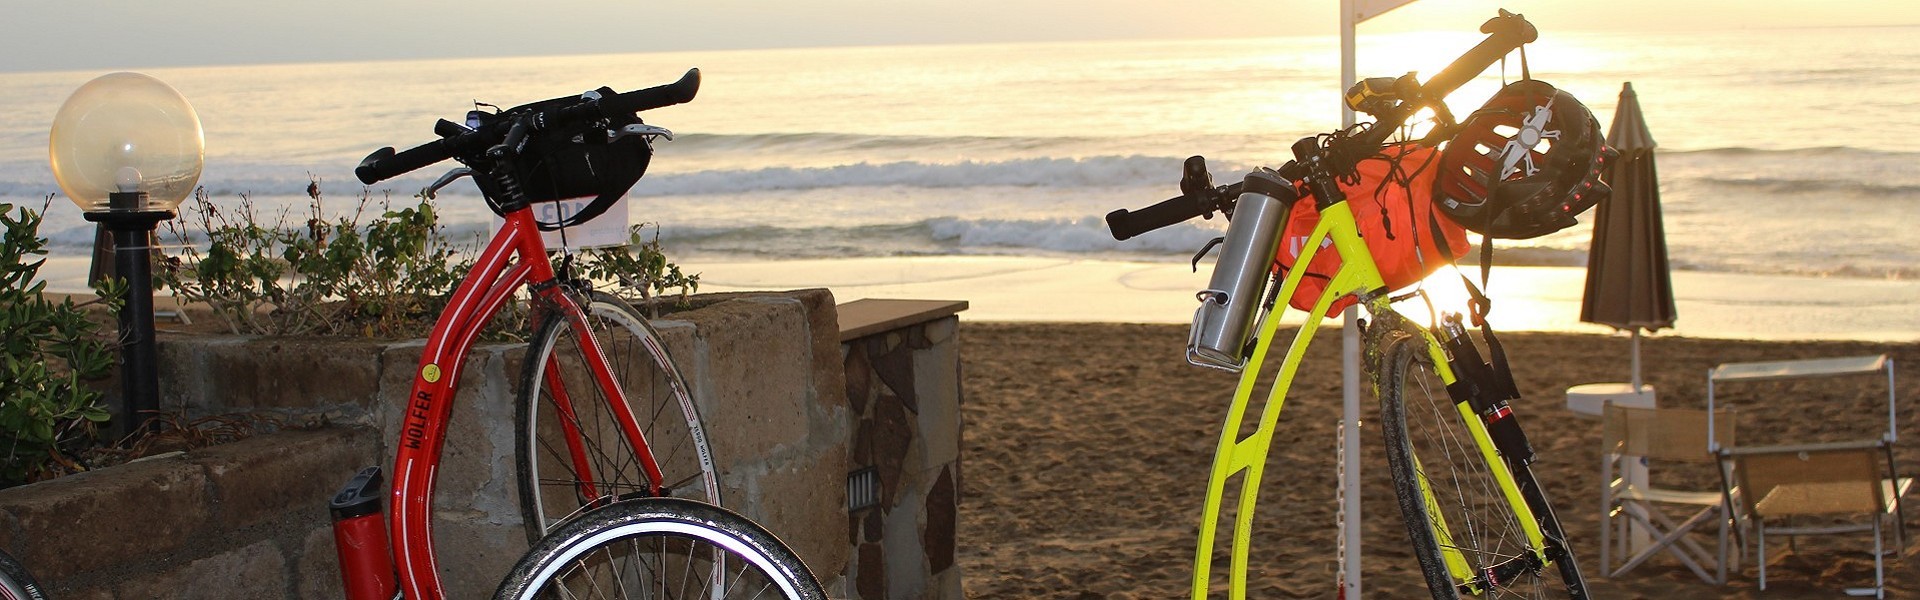 Bicycle rent genova | Renting an electric bike | bike trails italy | bike hire genoa